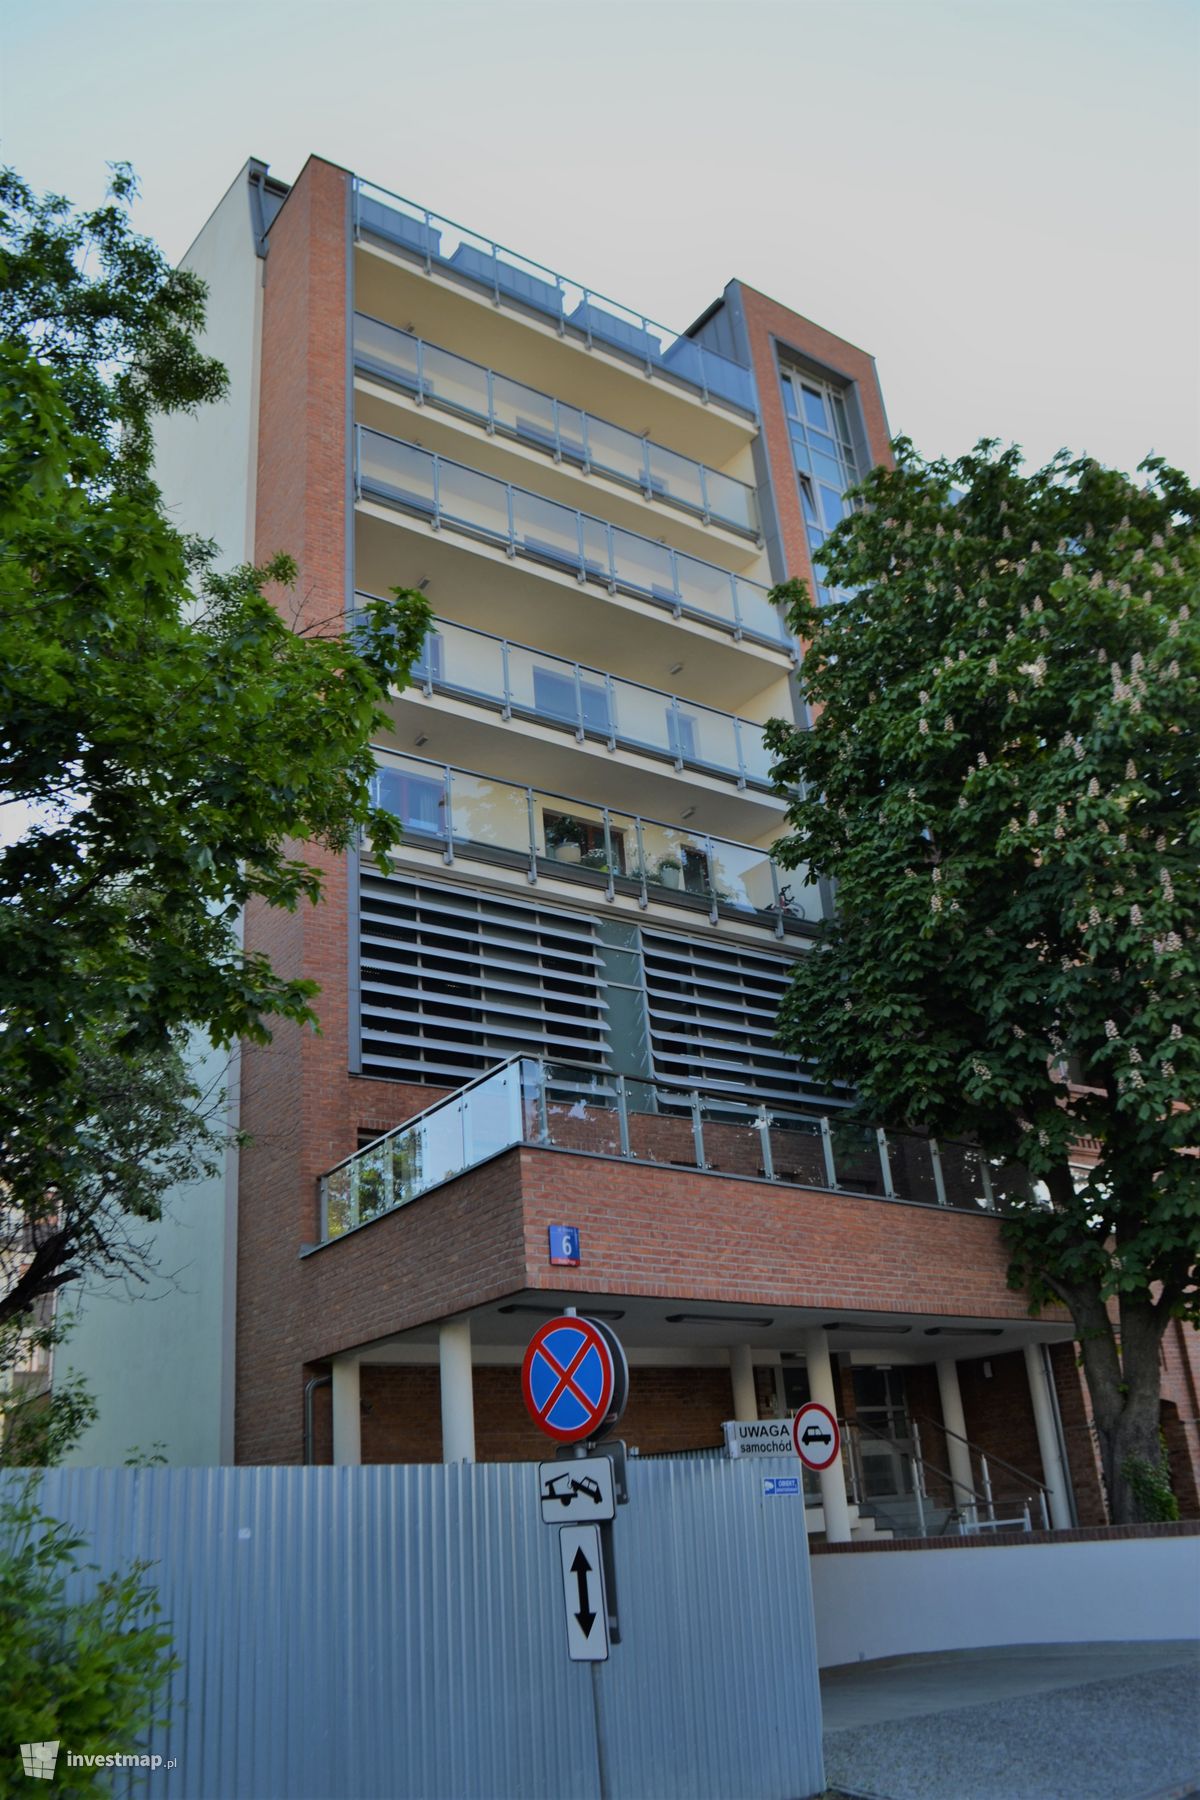 Zdjęcie Apartamentowce przy Krowiej 6 i Sierakowskiego 5 (Port Praski) fot. Jan Augustynowski